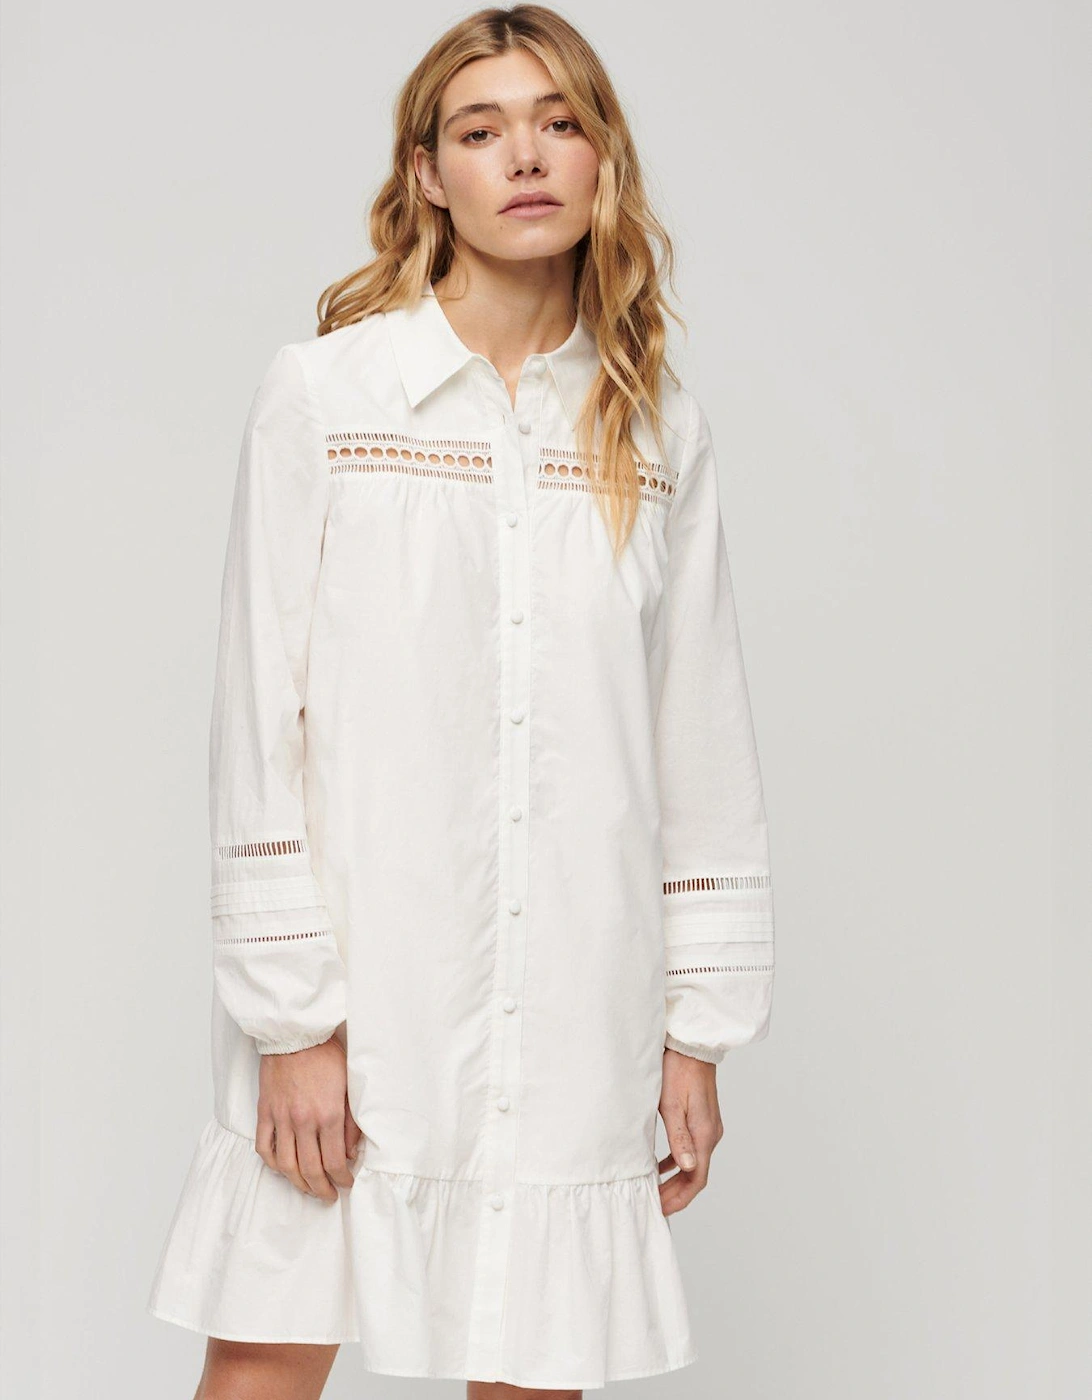 Lace Mix Shirt Dress - White, 7 of 6